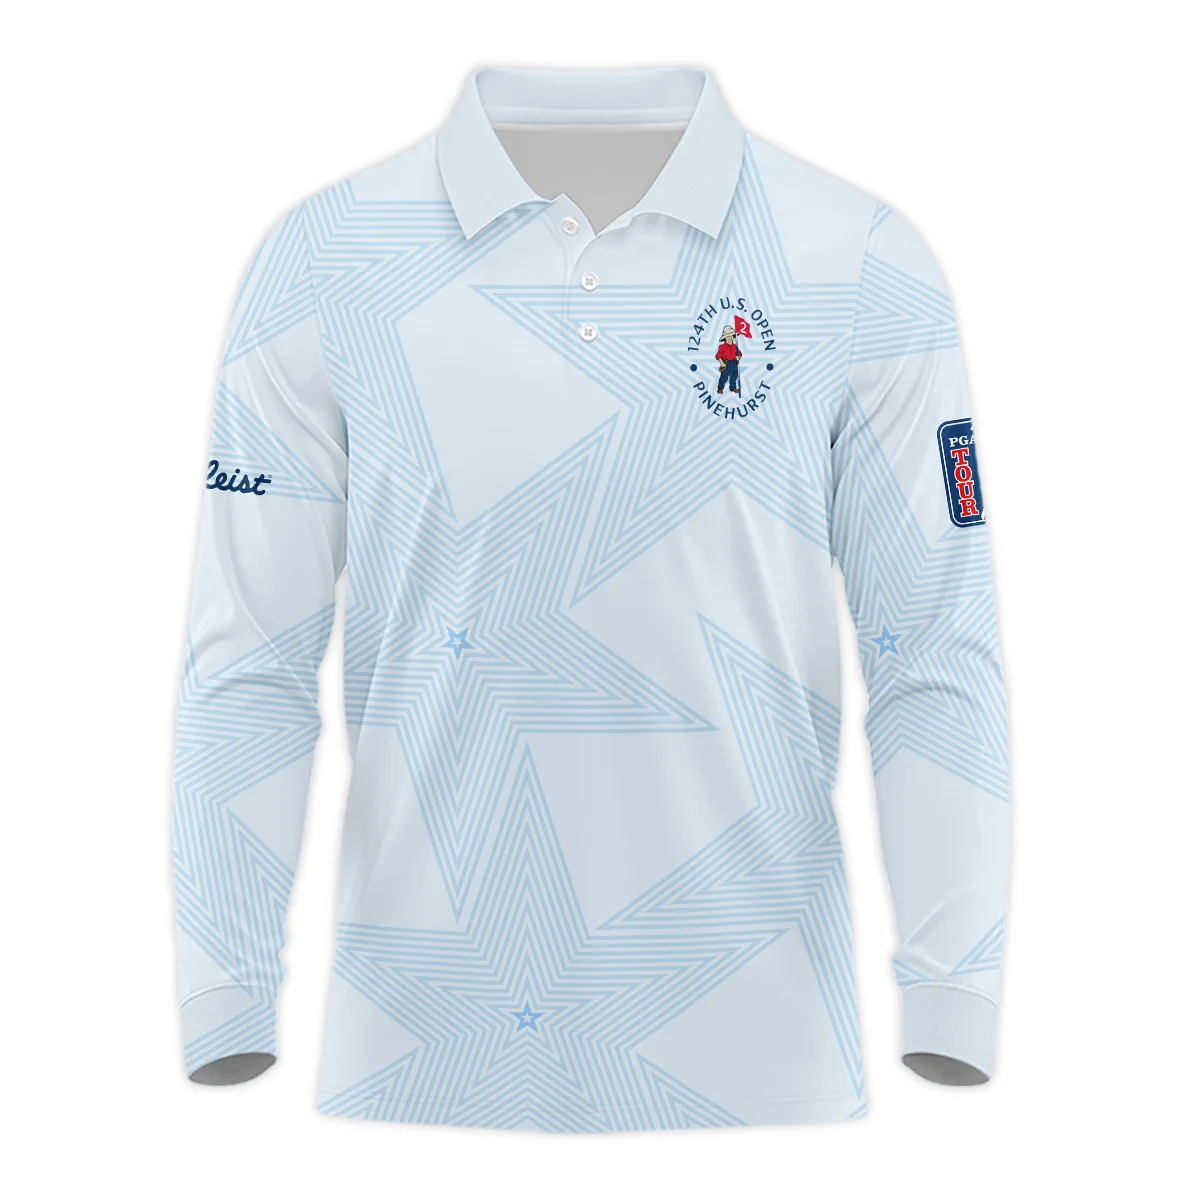 124th U.S. Open Pinehurst Golf Titleist Zipper Polo Shirt Sports Star Sripe Light Blue Zipper Polo Shirt For Men